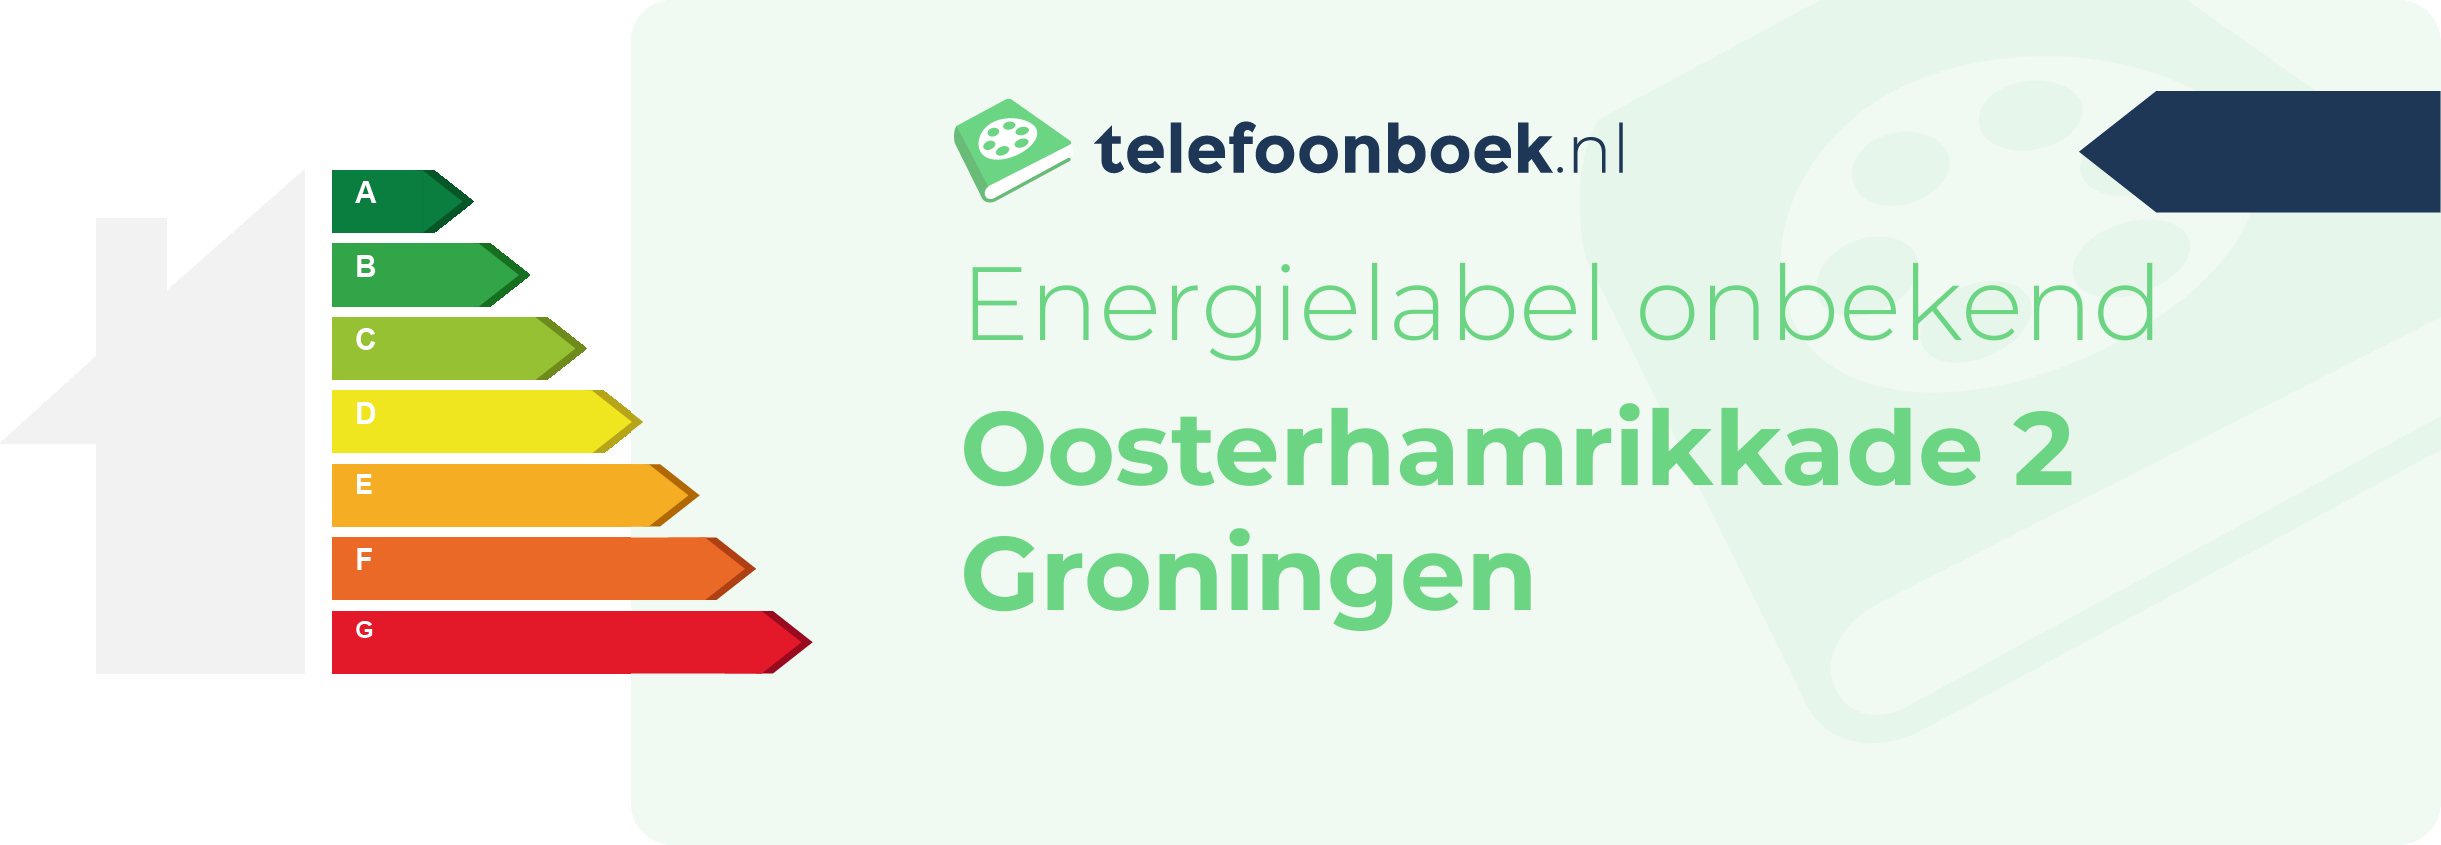 Energielabel Oosterhamrikkade 2 Groningen